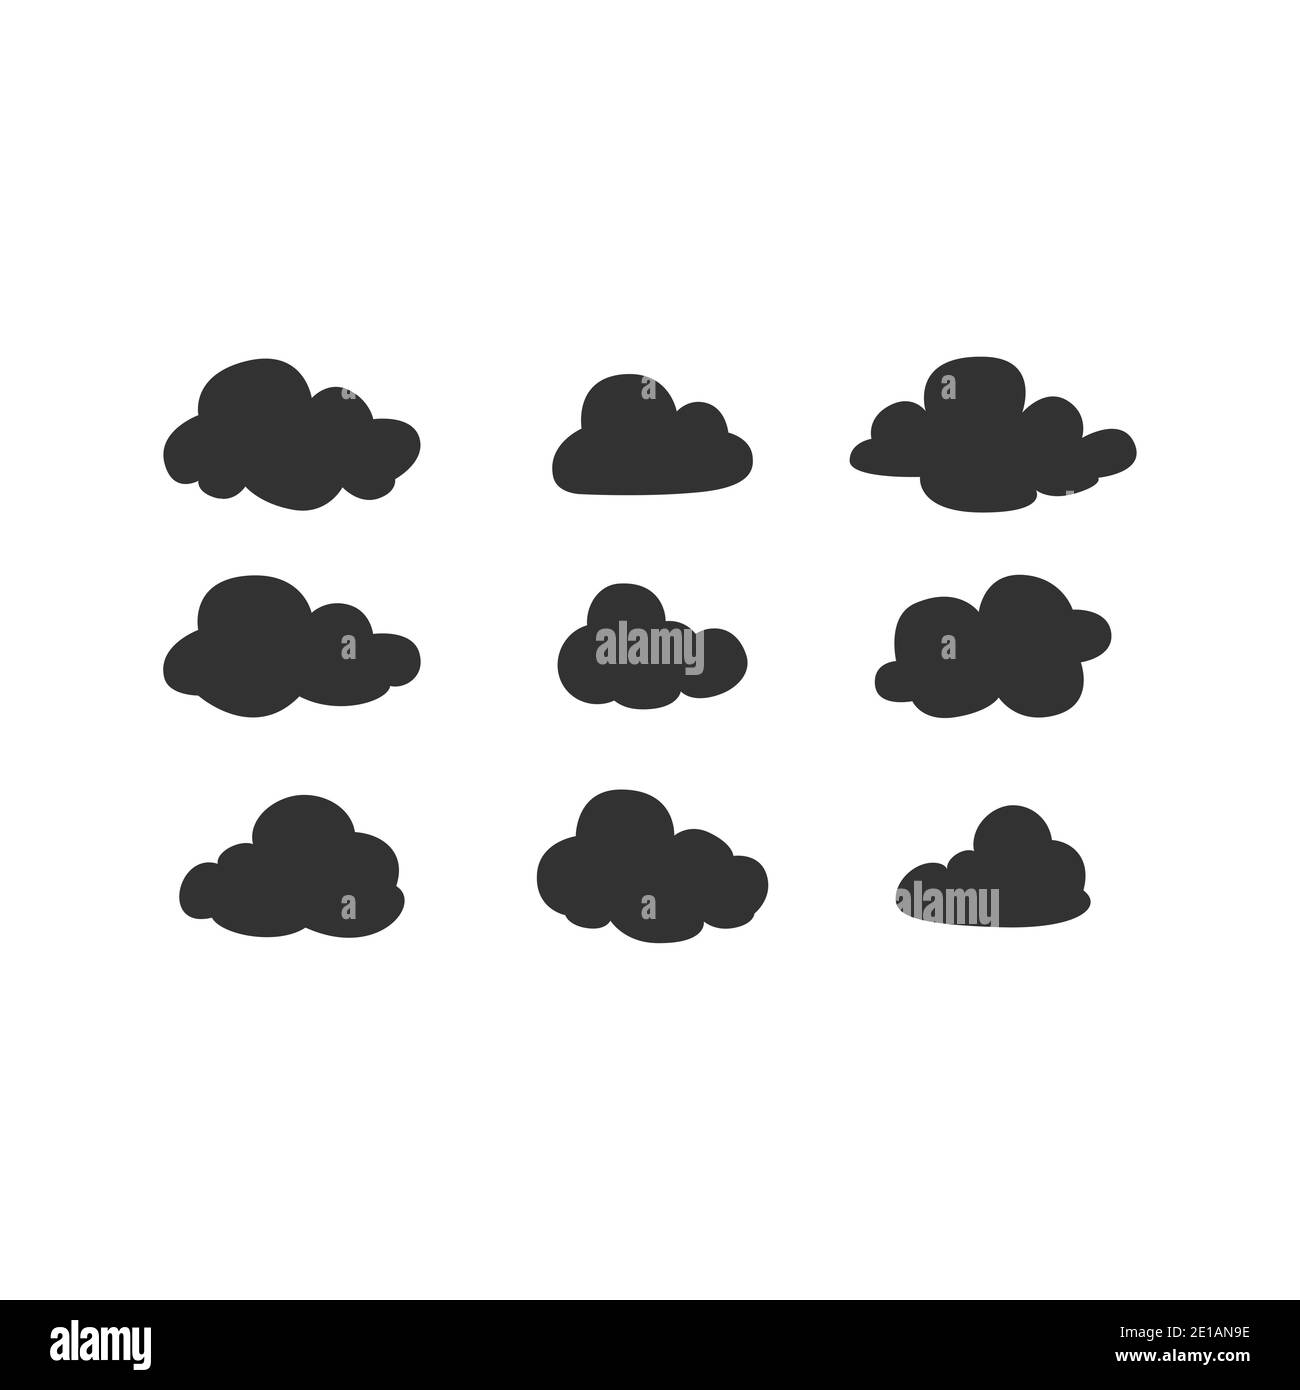 Insieme di icone vettoriali nere delle nuvole. Collezione di silhouette cloud. Illustrazione Vettoriale